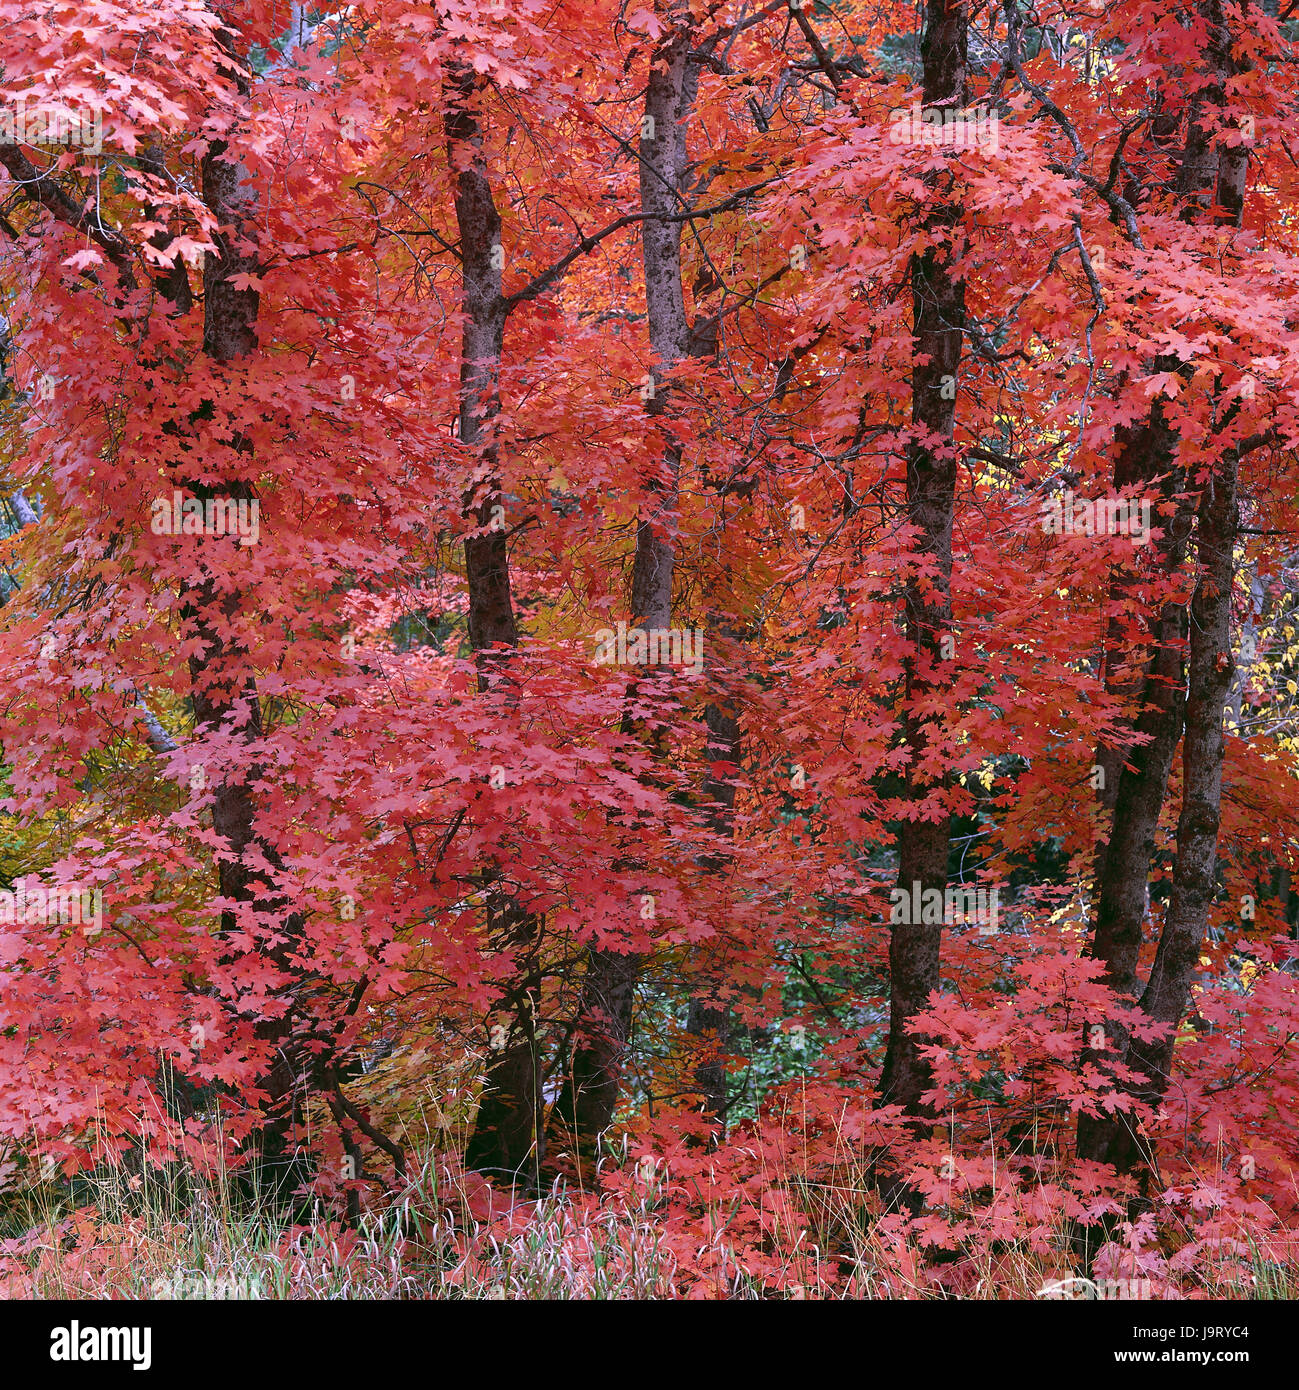 Gli STATI UNITI D'AMERICA,Utah,Uinta montagne,Timpanogos regione,legno,alberi,l'autunno la colorazione,natura,vegetazione,colori,modifica,modifica,nessuno,deserta,scenario,fogliame,fogliame di autunno,latifoglie,Legno di autunno,uno spettacolo della natura,maple,colore tuning,rosso,rosa,alberi di acero,autunno,stagioni,fogliame di autunno,colorfully,radiant,riposo,distensione,riposo,l'energia,fascino,icona,piazza di respirazione,time out,tuning,l'armonia,meditazione,riposo,abbondanza,magic,Zen, Foto Stock